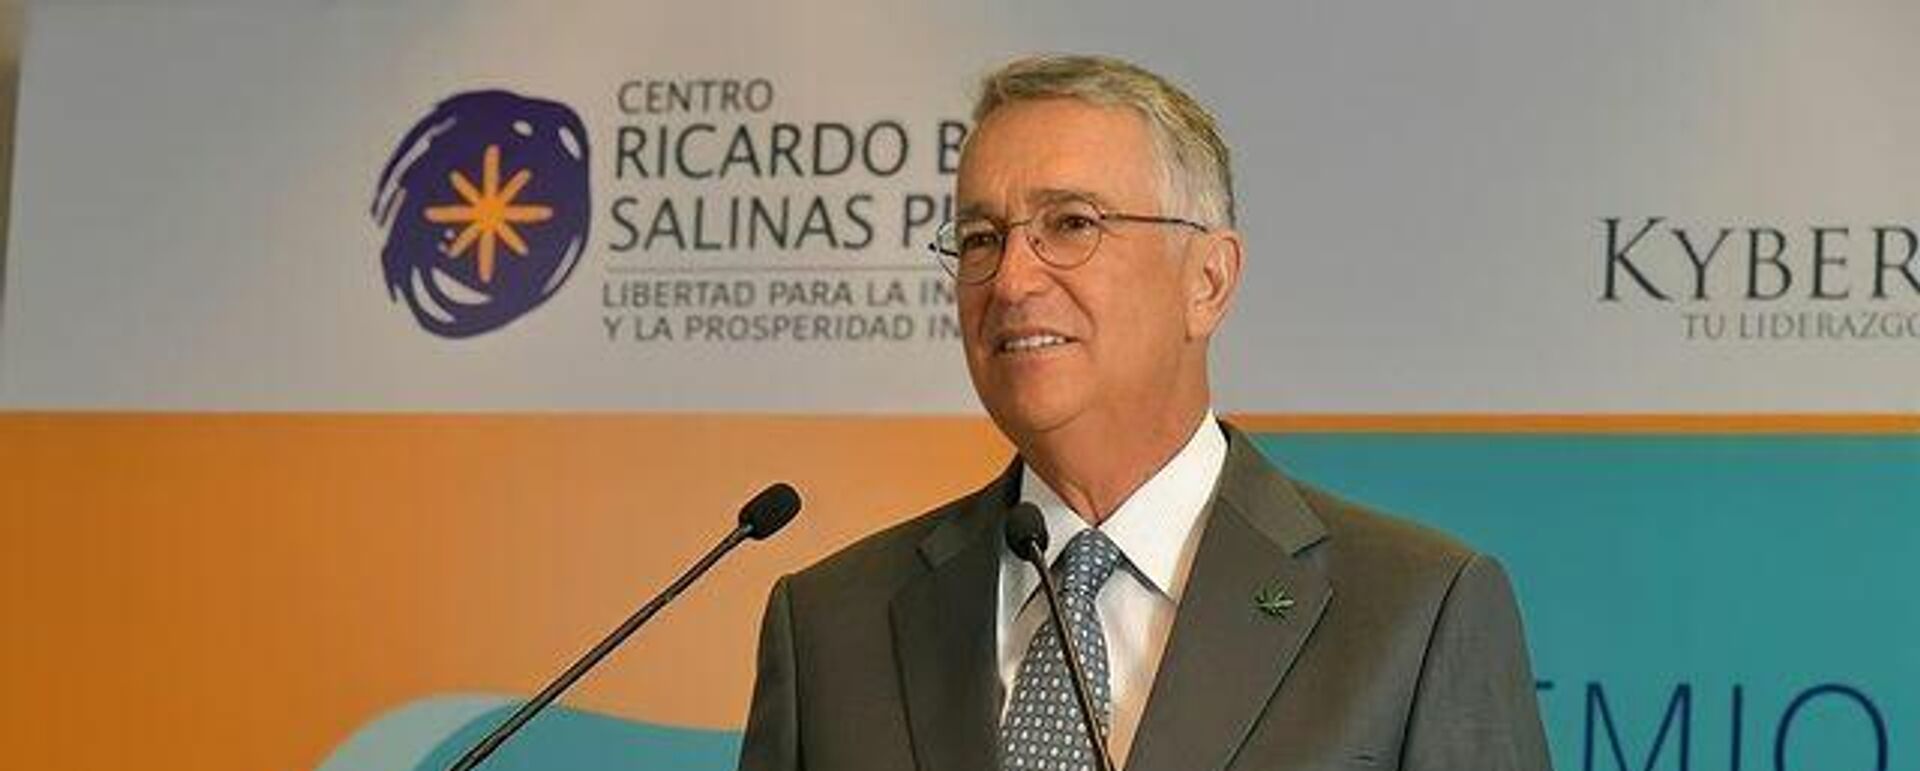 Ricardo Salinas Pliego, empresario mexicano - Sputnik Mundo, 1920, 19.10.2021